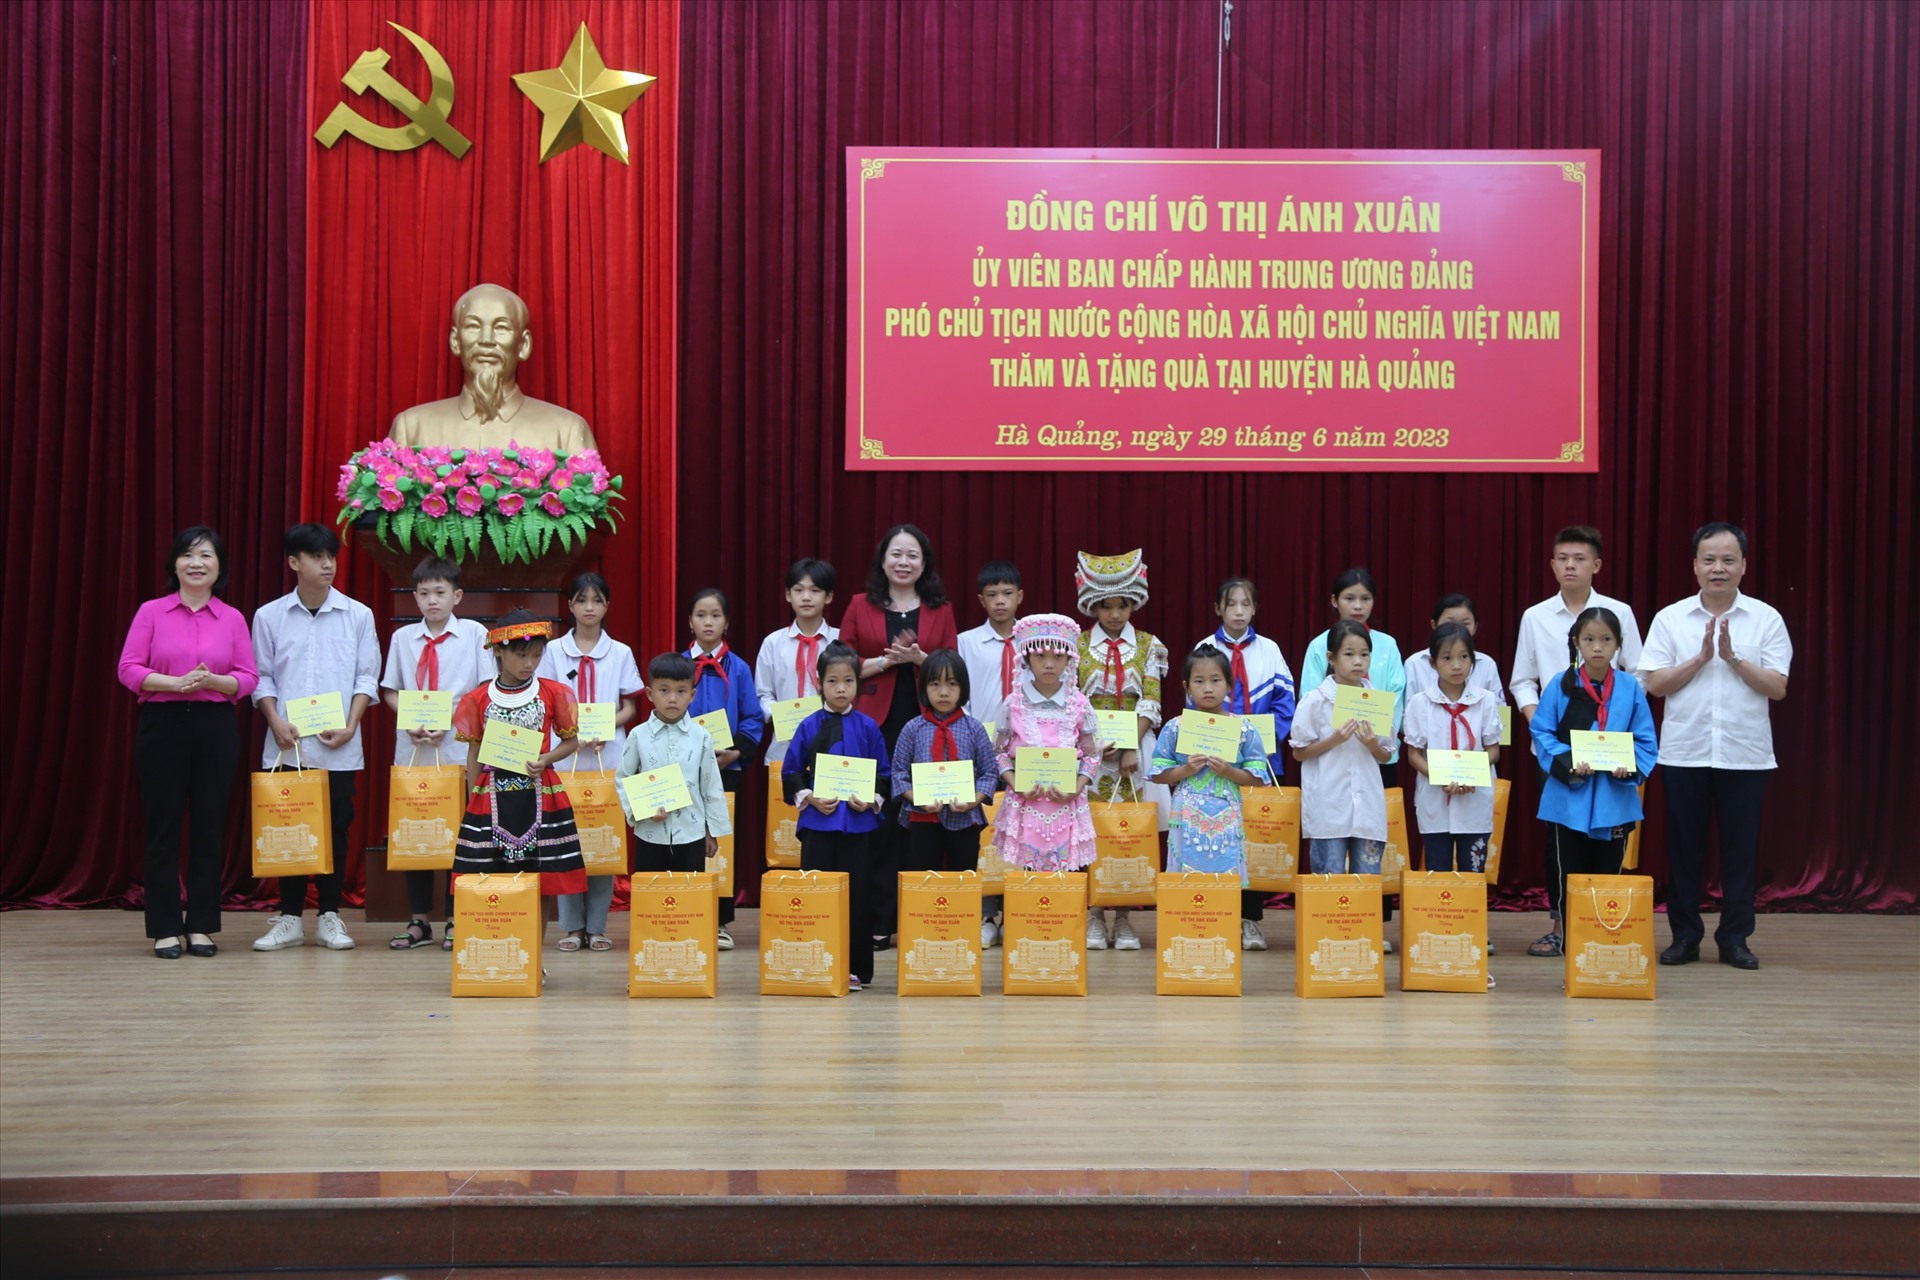 Phó Chủ tịch nước Võ Thị Ánh Xuân tặng quà các em học sinh. Ảnh: Công Luận.